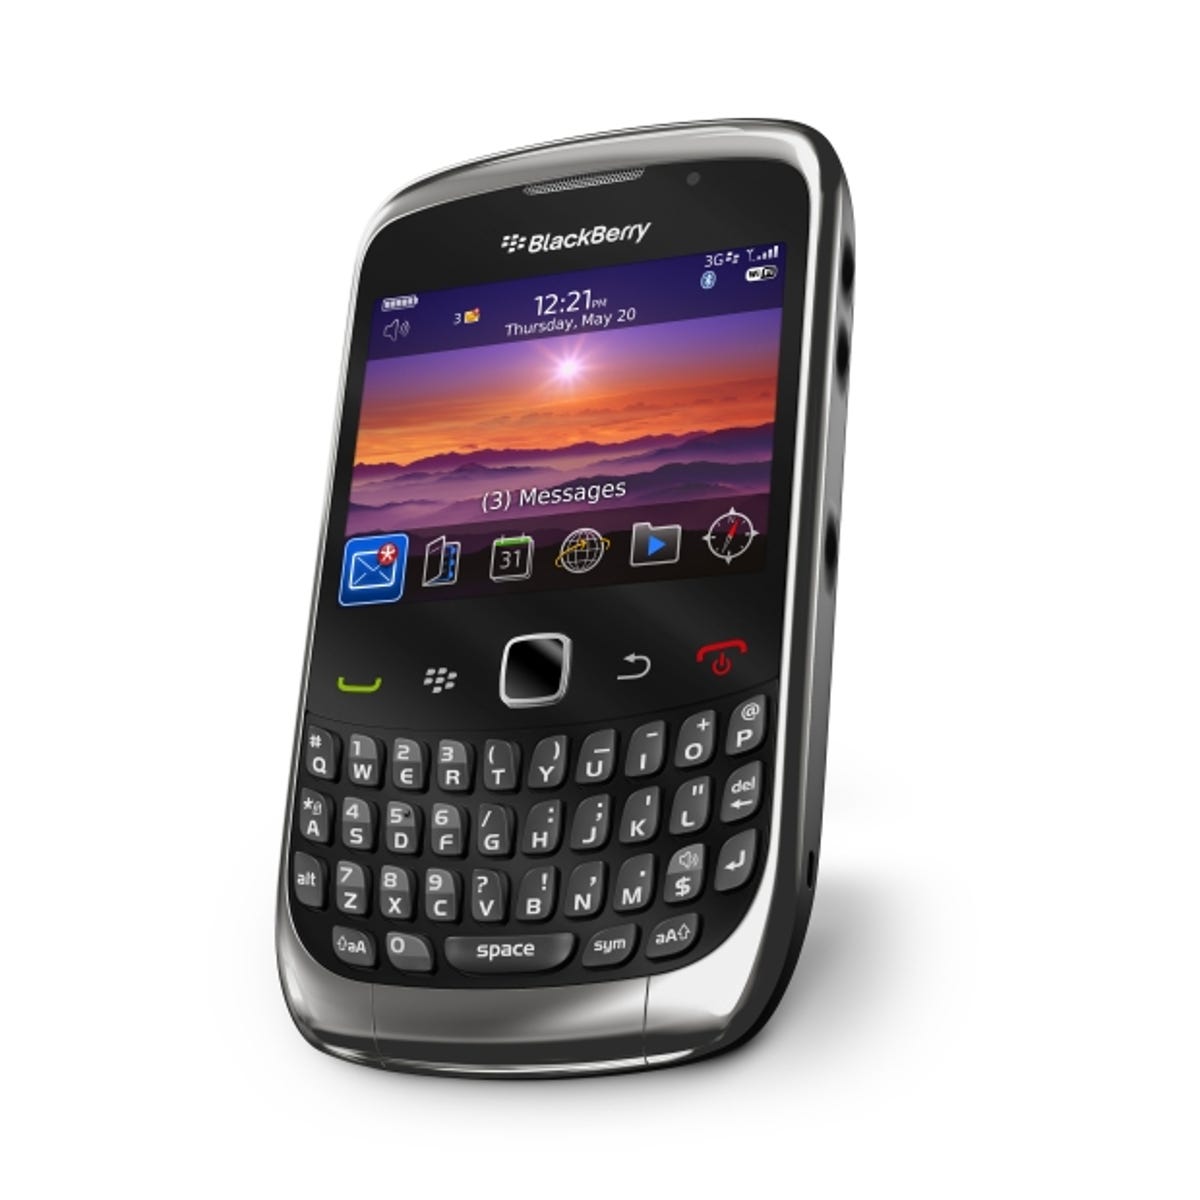 blackberrycurve3g1.jpg